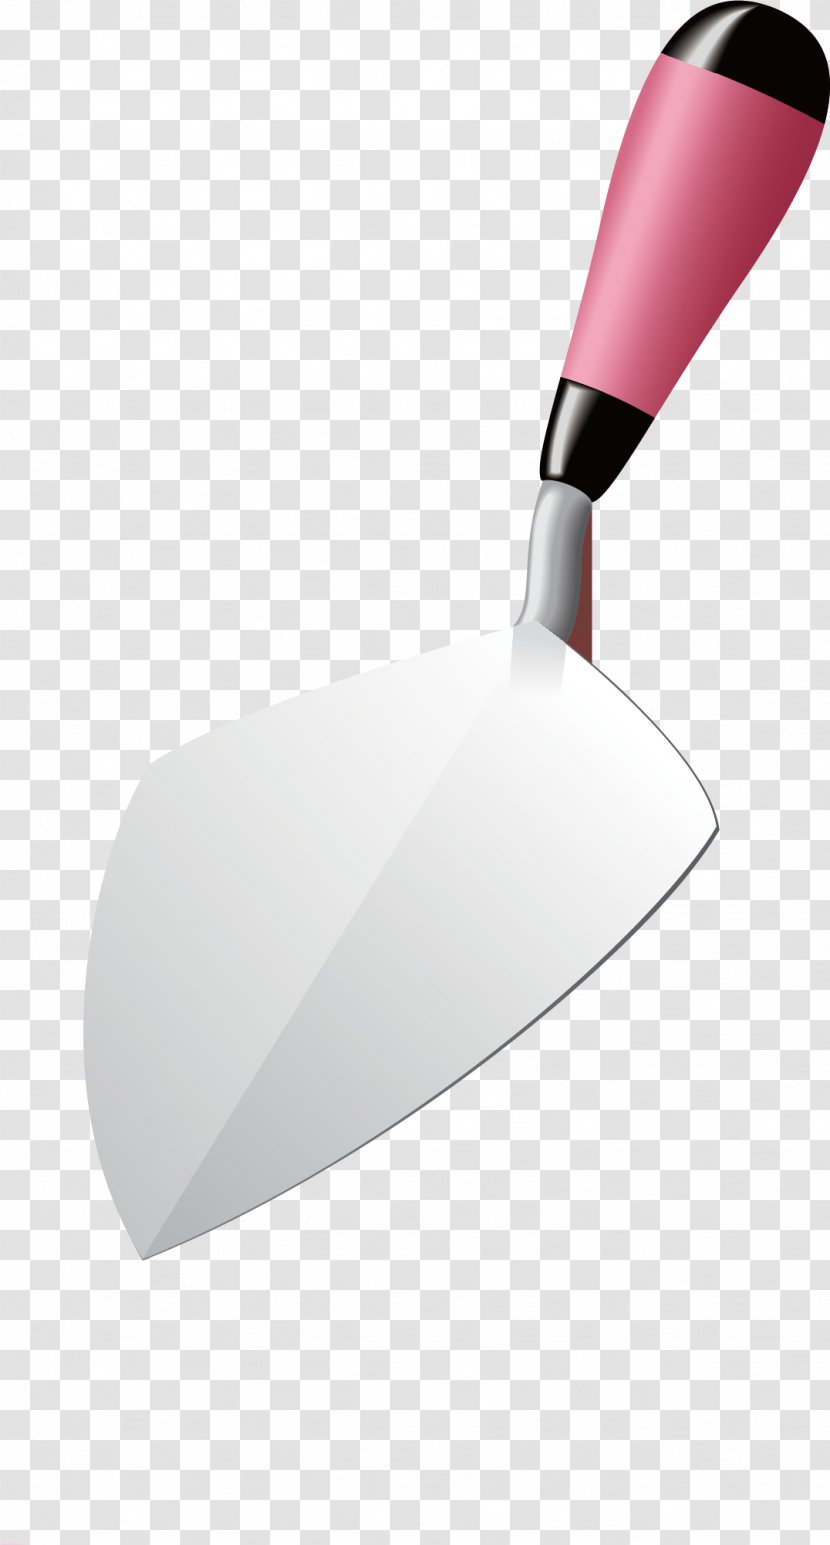 Shovel Download Computer File - Google Images - Vector Material Transparent PNG